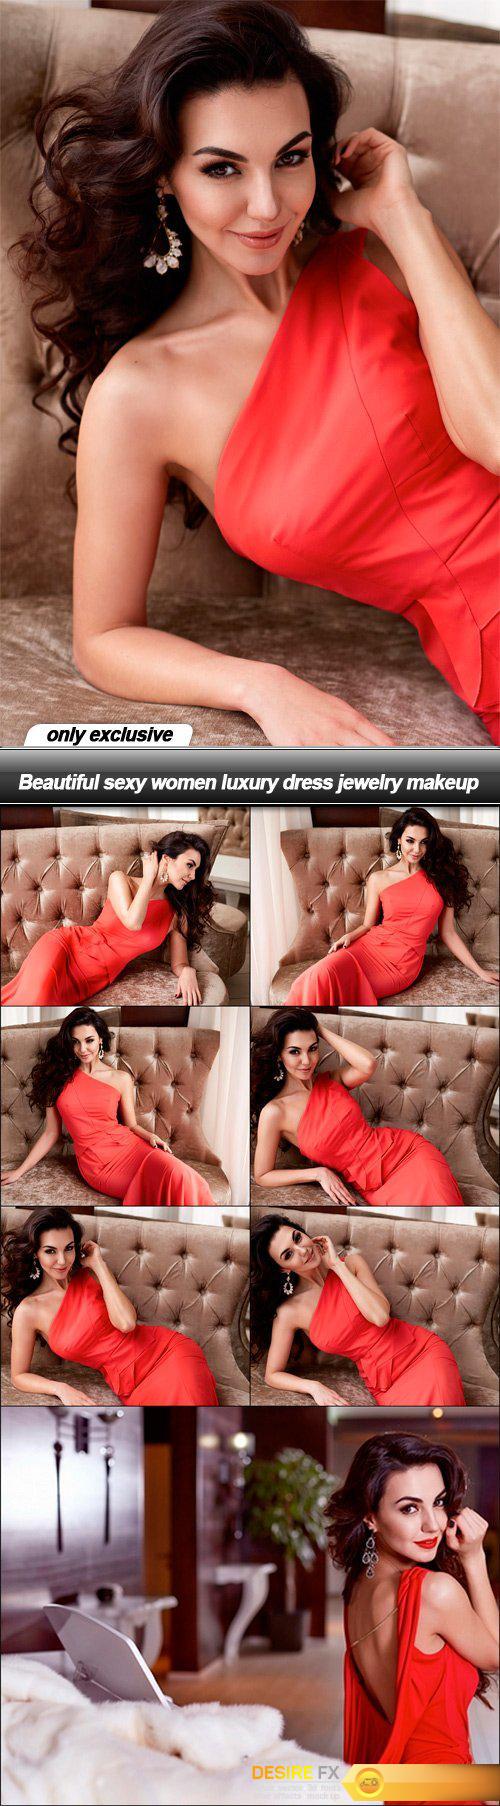 Beautiful sexy women luxury dress jewelry makeup - 8 UHQ JPEG